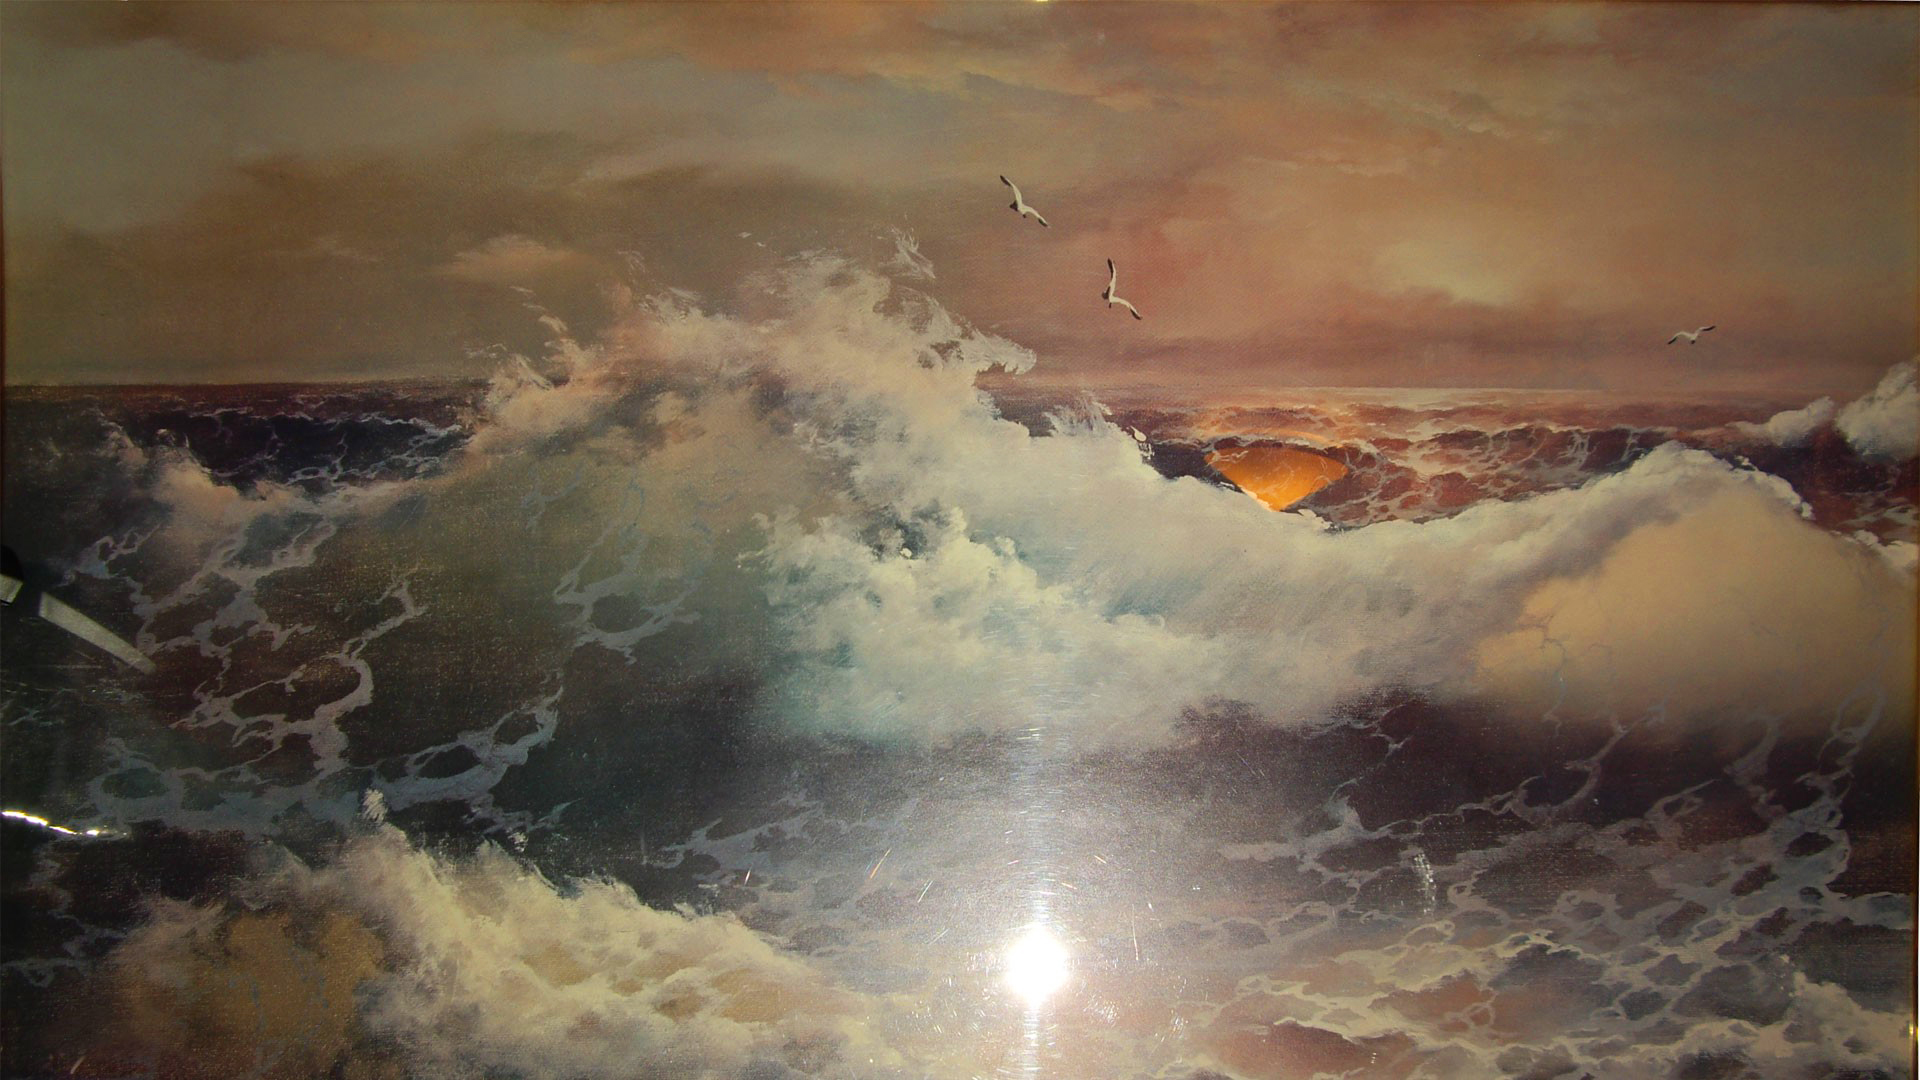 Скачать обои бесплатно Море, Океан, Волна, Картина, Буря, Художественные картинка на рабочий стол ПК